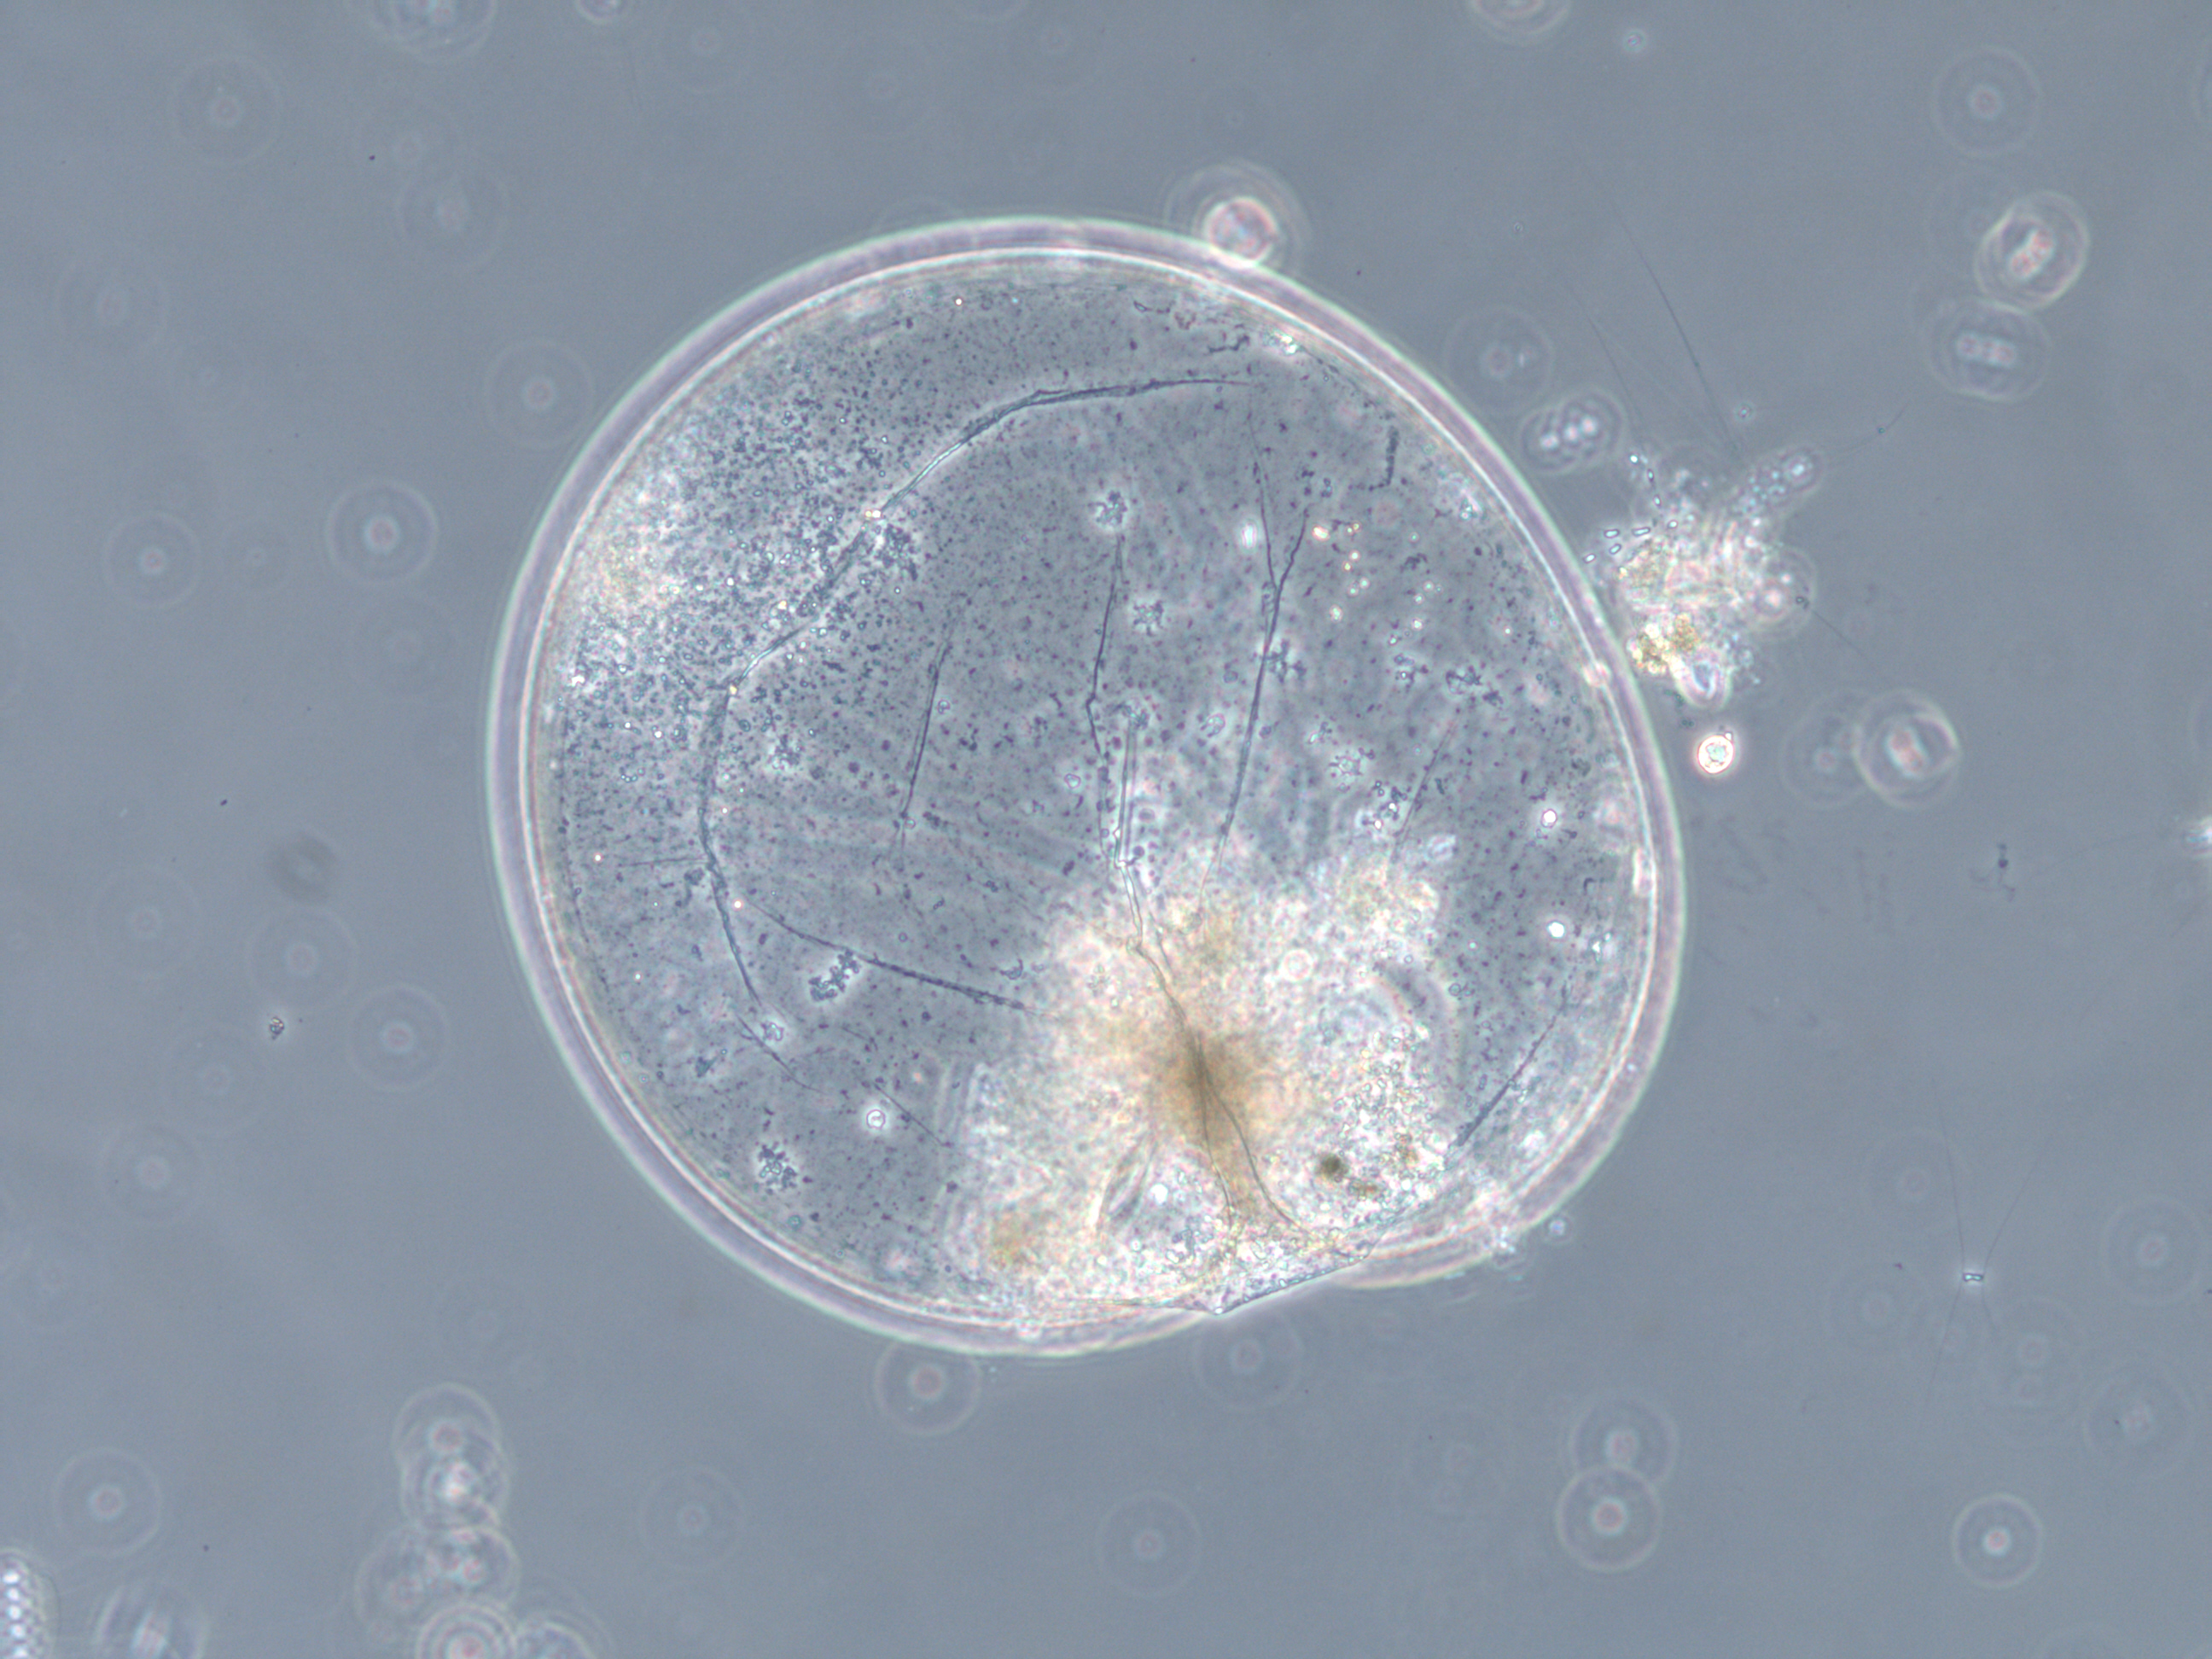 Fotografi av algecellens overflate (Noctiluca scintillans)